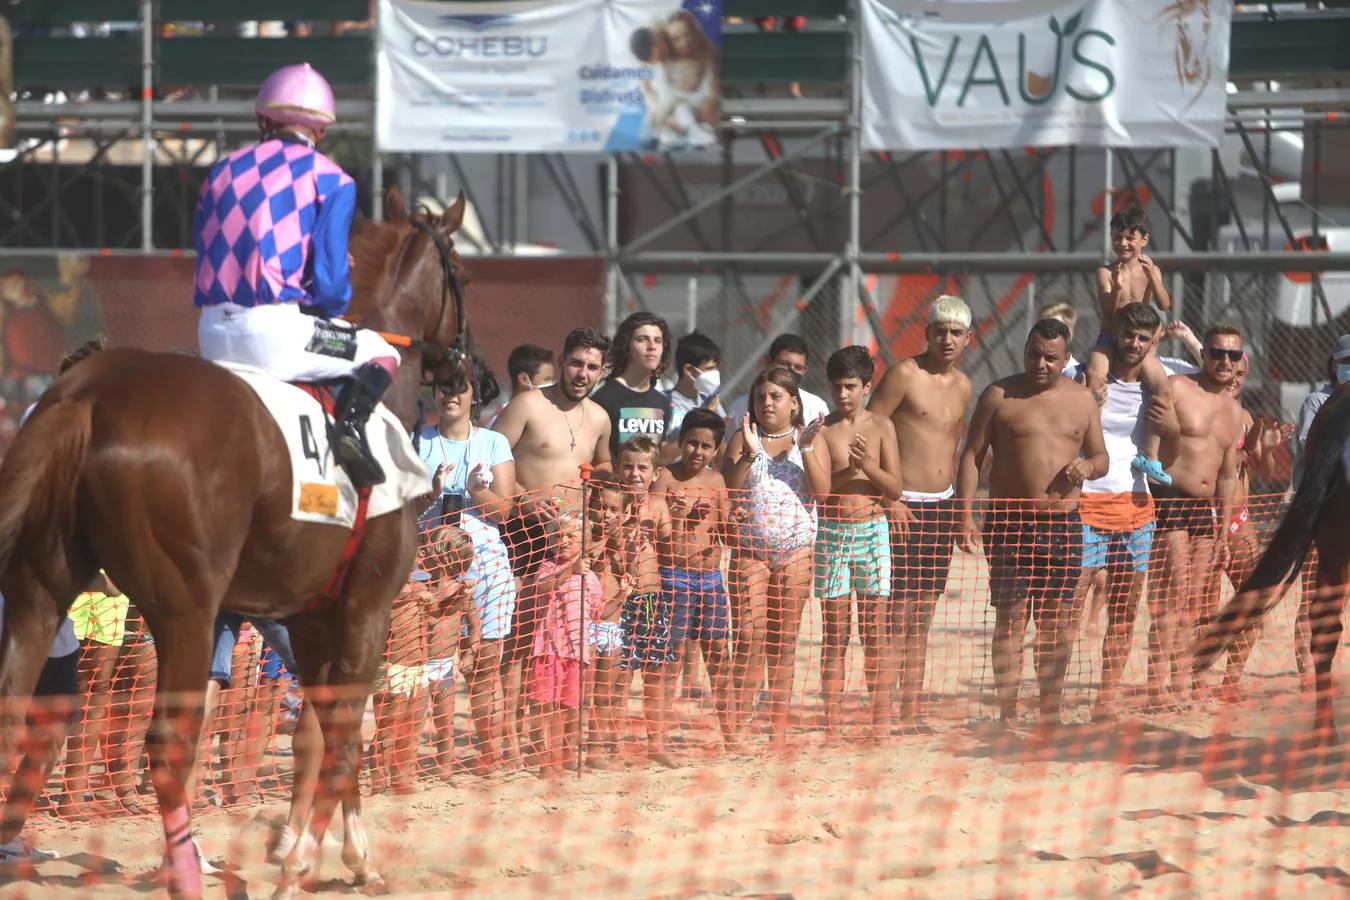 FOTOS: Segundo ciclo de las Carreras de Caballos de Sanlúcar